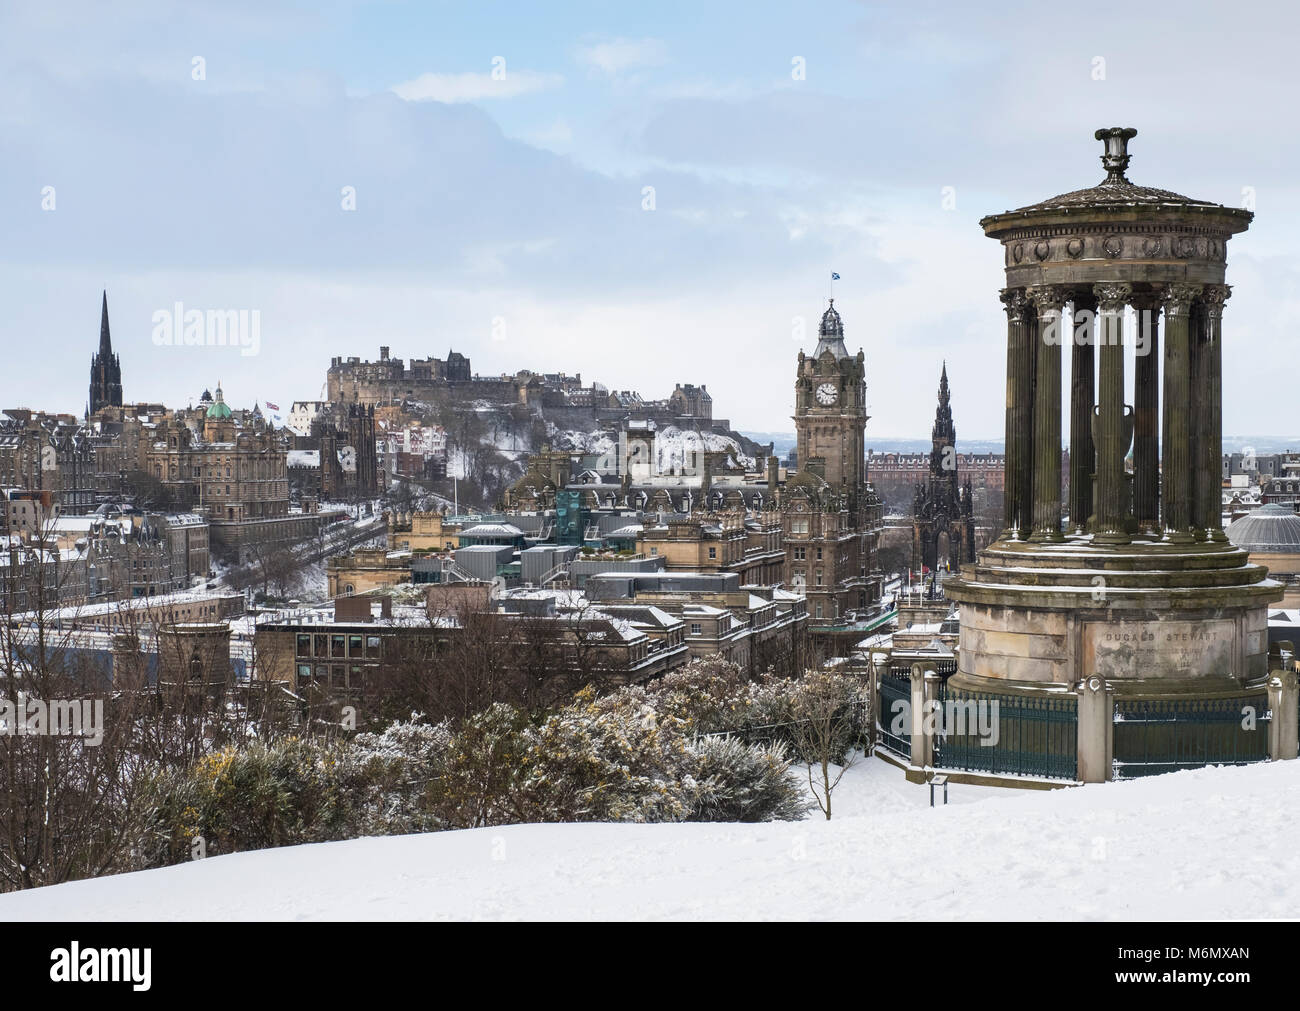 Vue depuis Calton Hill sur la ville d'Édimbourg après de fortes chutes de neige , Ecosse, Royaume-Uni Banque D'Images